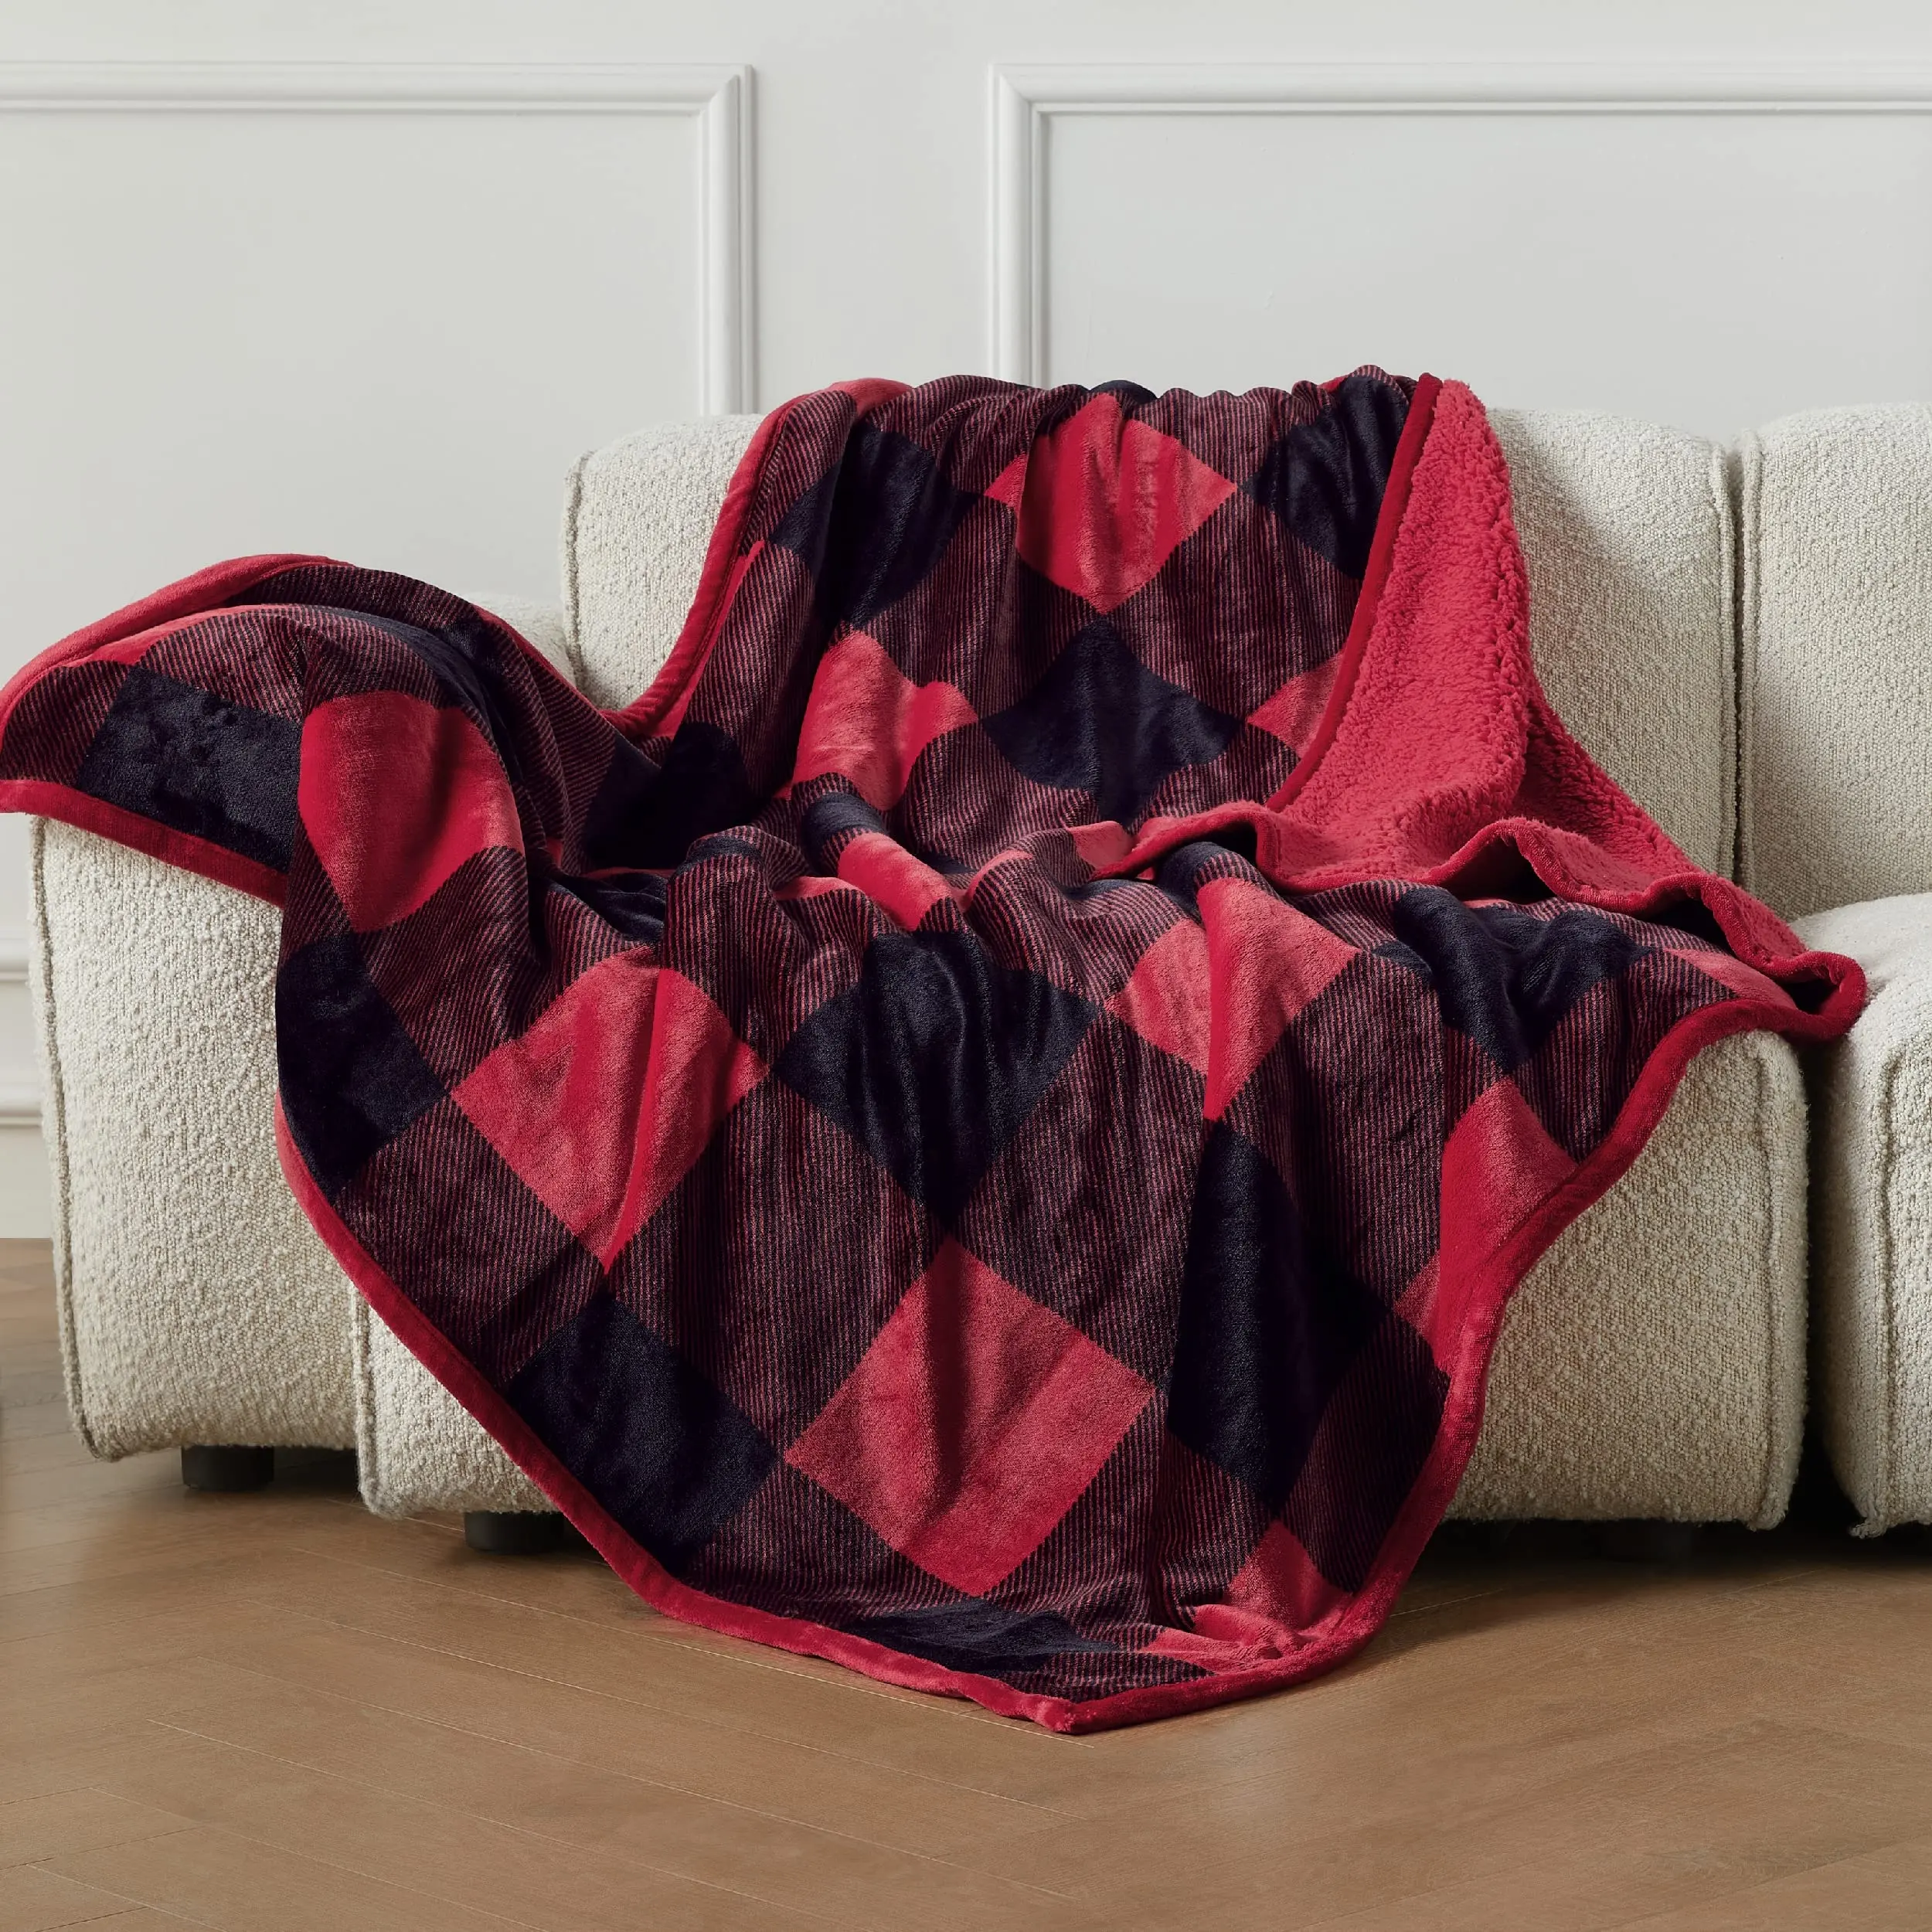 Bindi Natal Sherpa selimut sublimasi lembut hangat merah dan hitam poliester selimut Sofa kotak-kotak selimut lempar